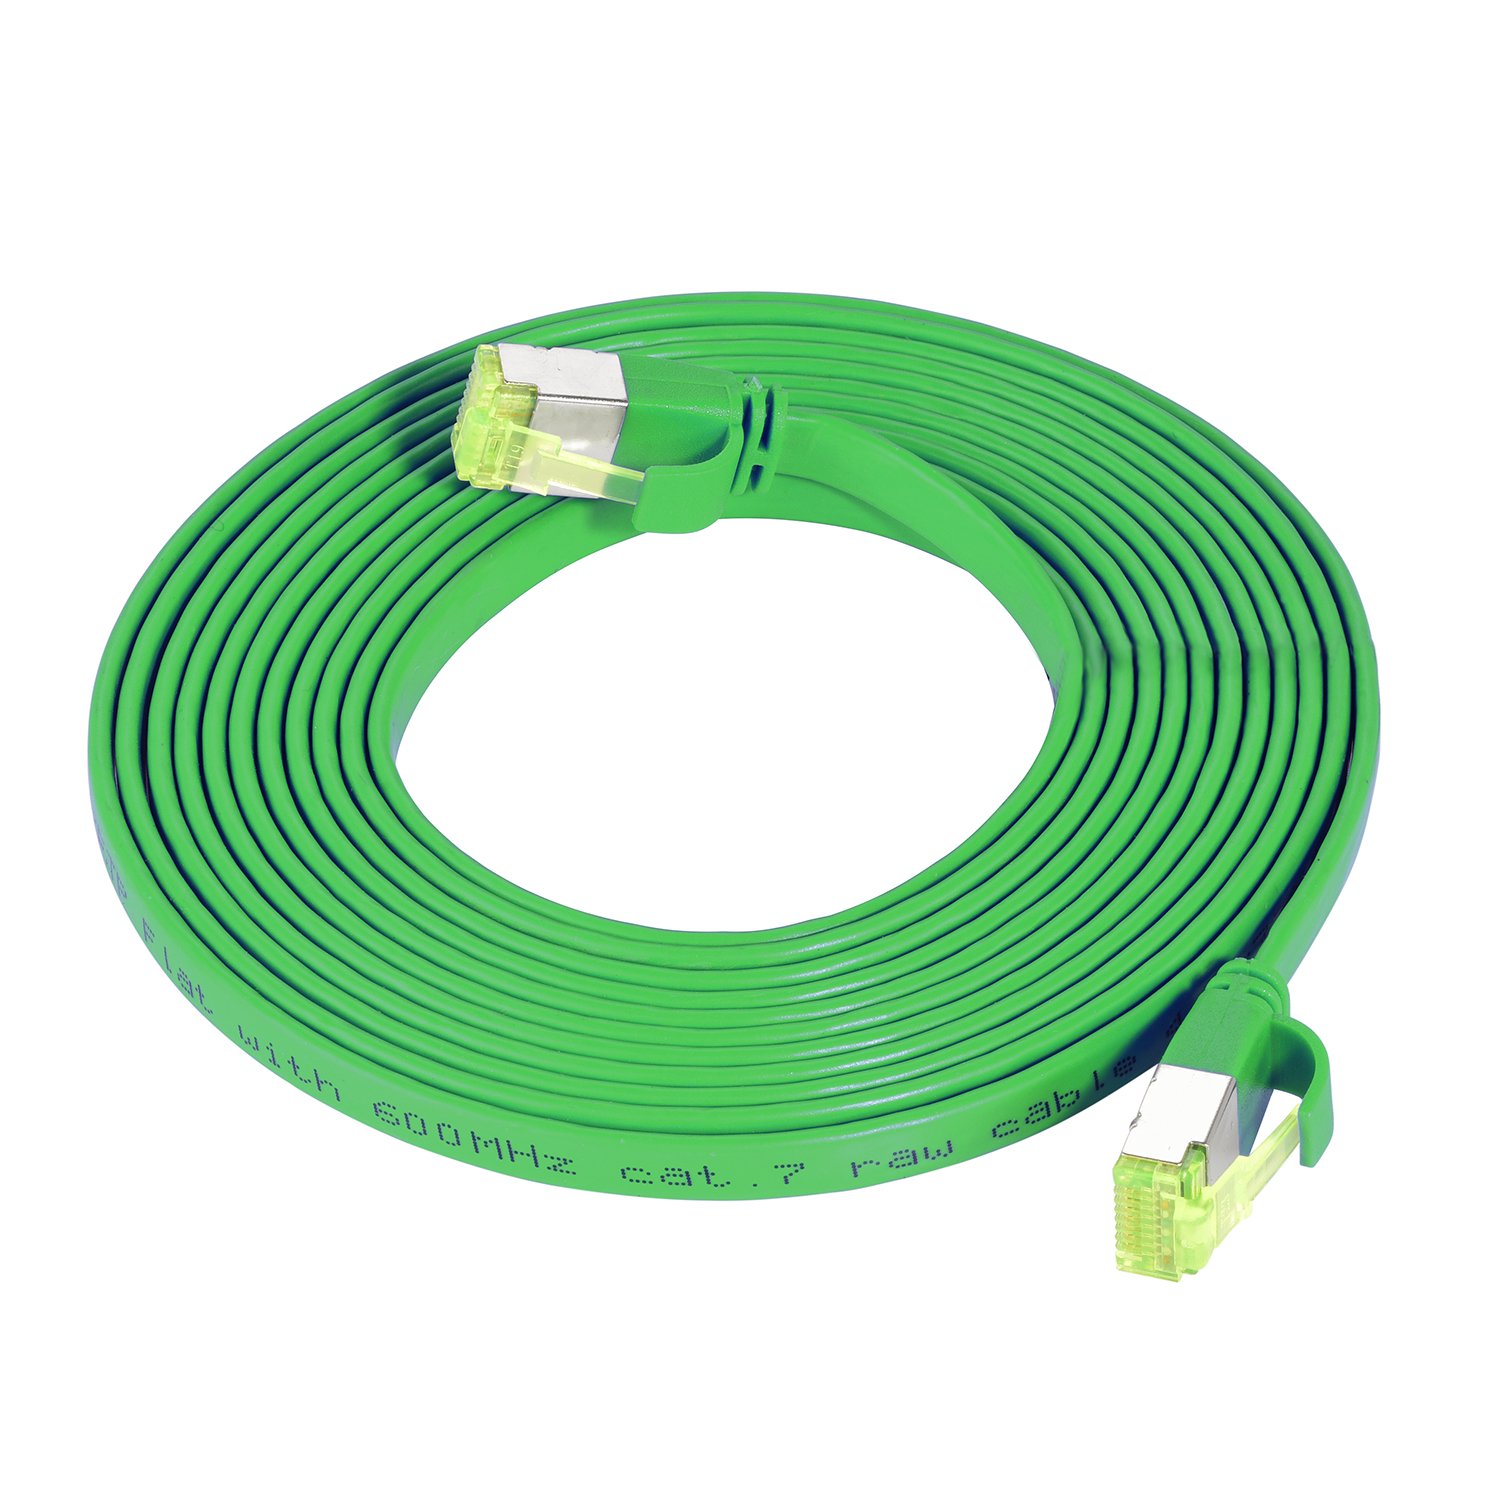 Netzwerkkabel, m grün, Flachkabel U/FTP Patchkabel / GBit, 10 10 10m TPFNET